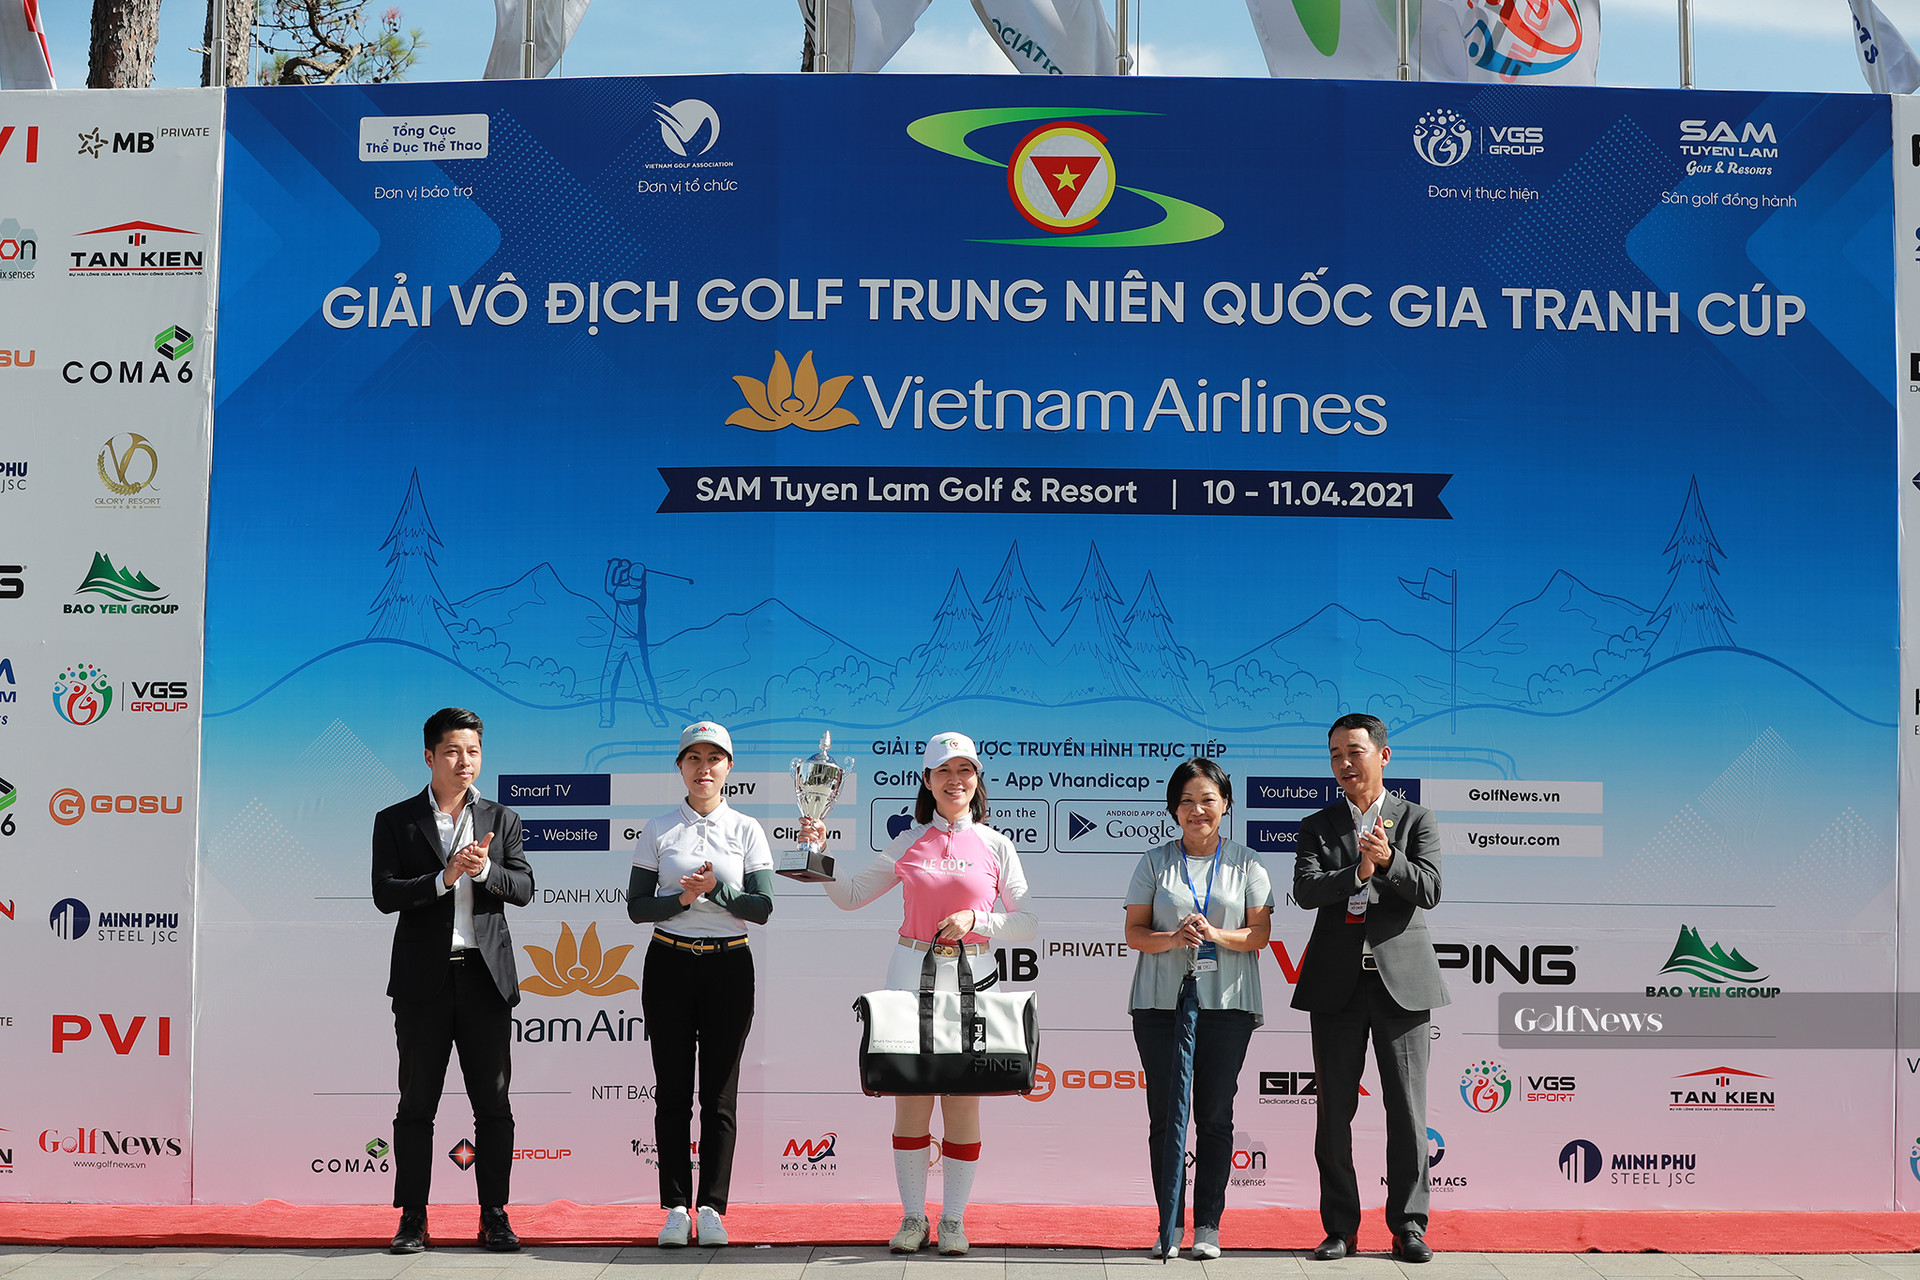 Kết quả chung cuộc giải Vô địch golf Trung niên Quốc gia tranh cúp Vietnam Airlines - Ảnh 8.